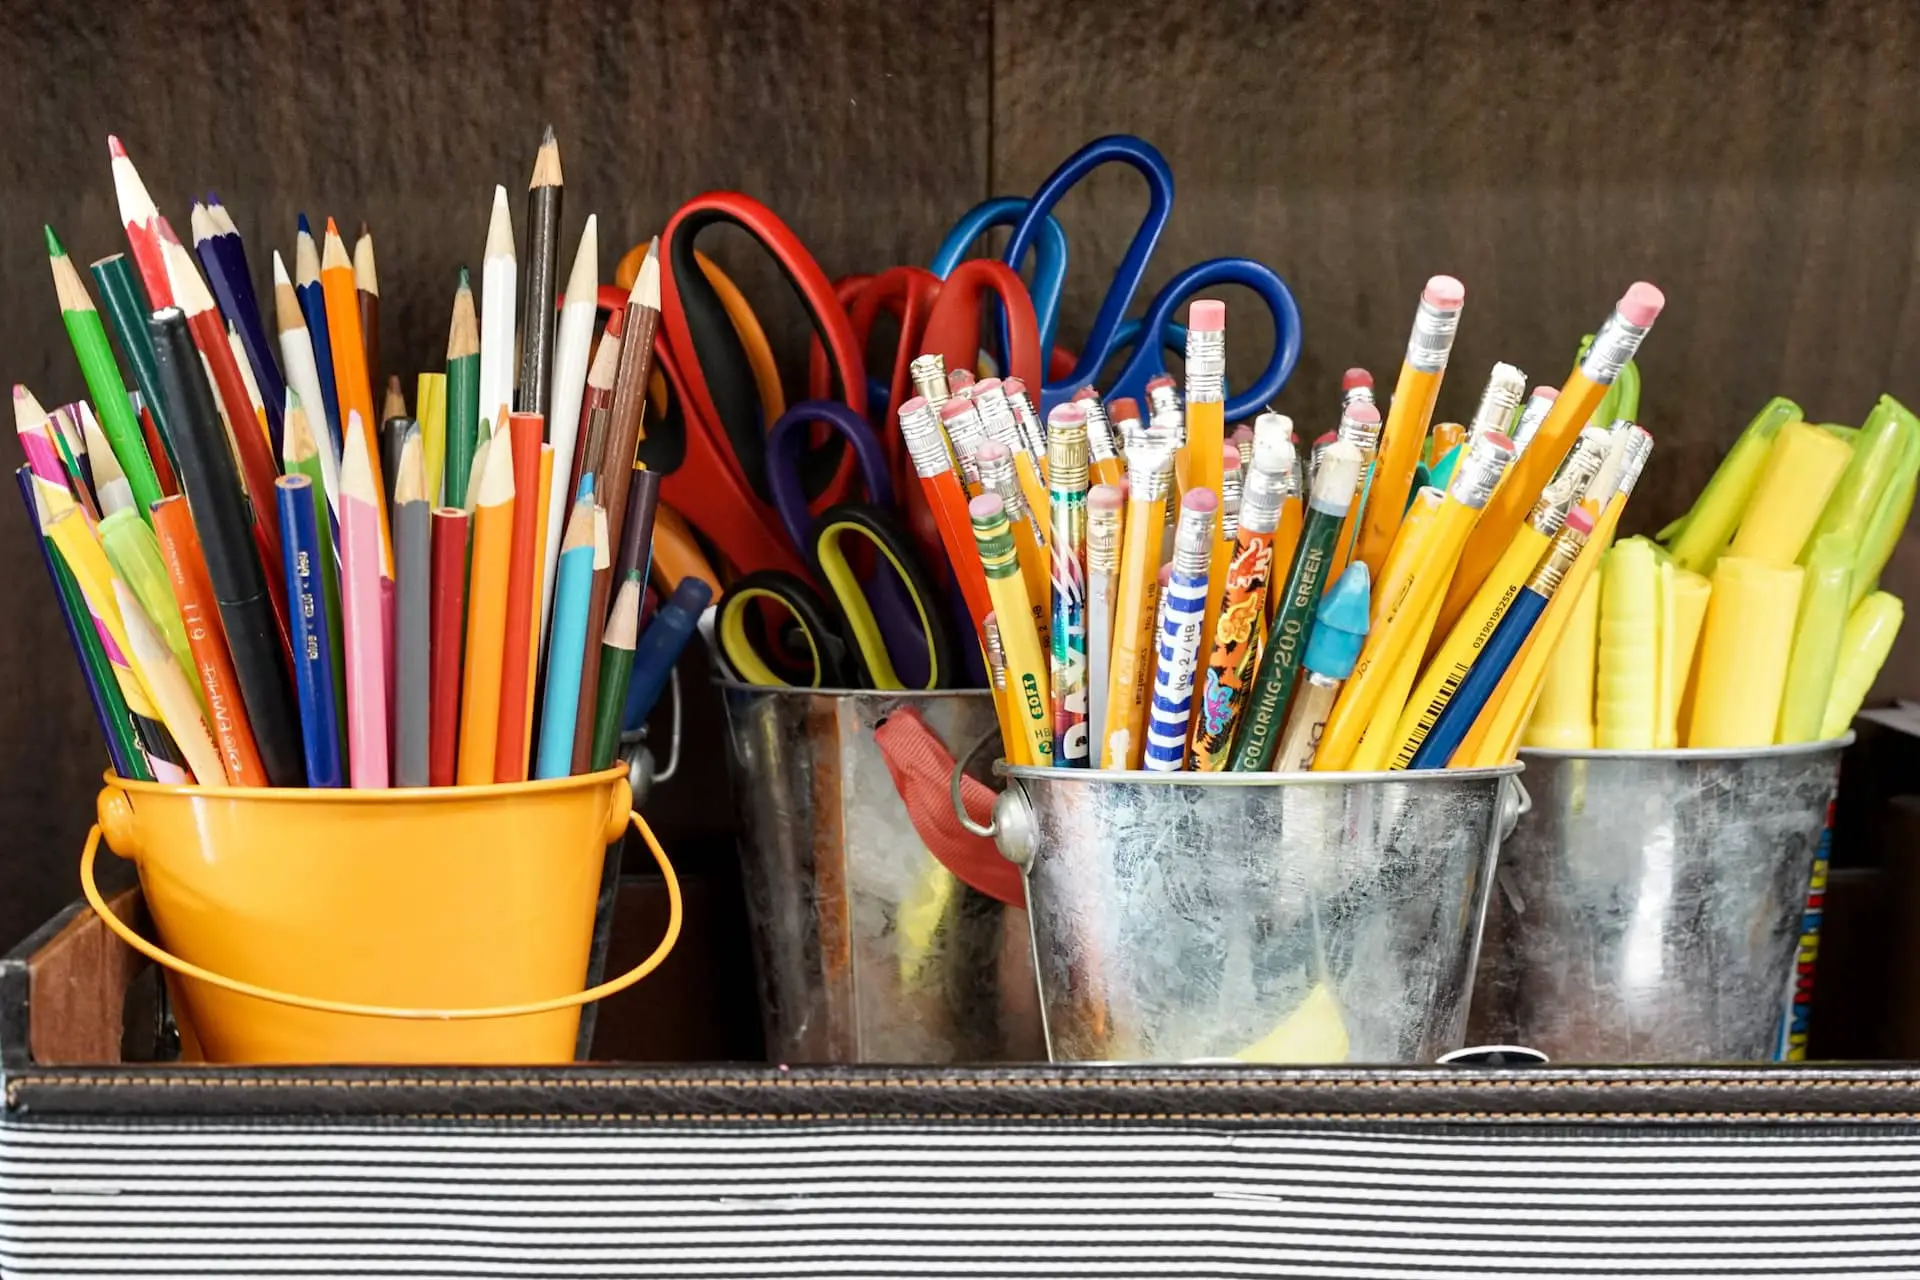 Pencils at primary school